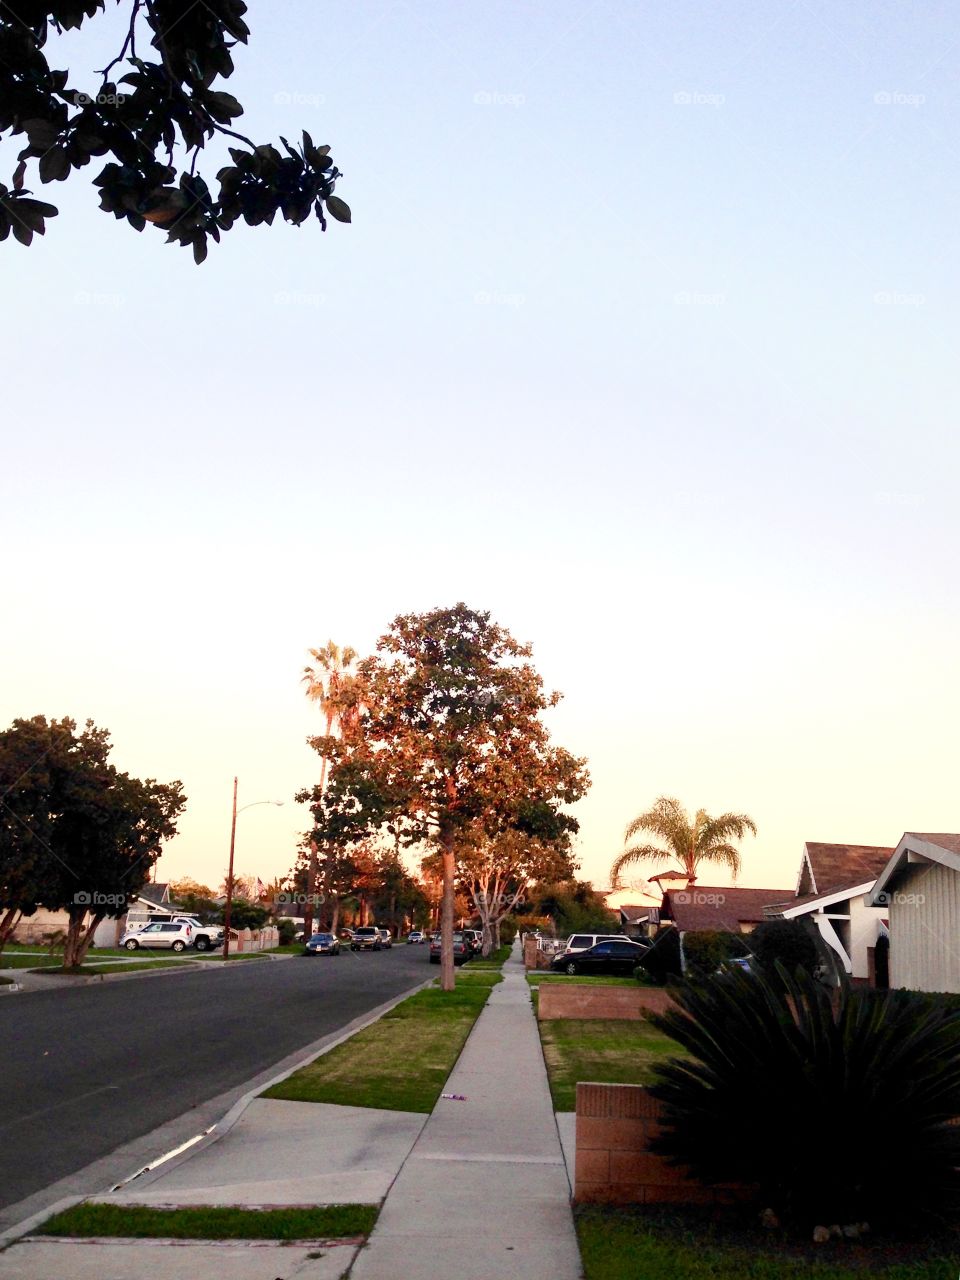 My Neighborhood View

Published by:
HappyBrownMonkey 